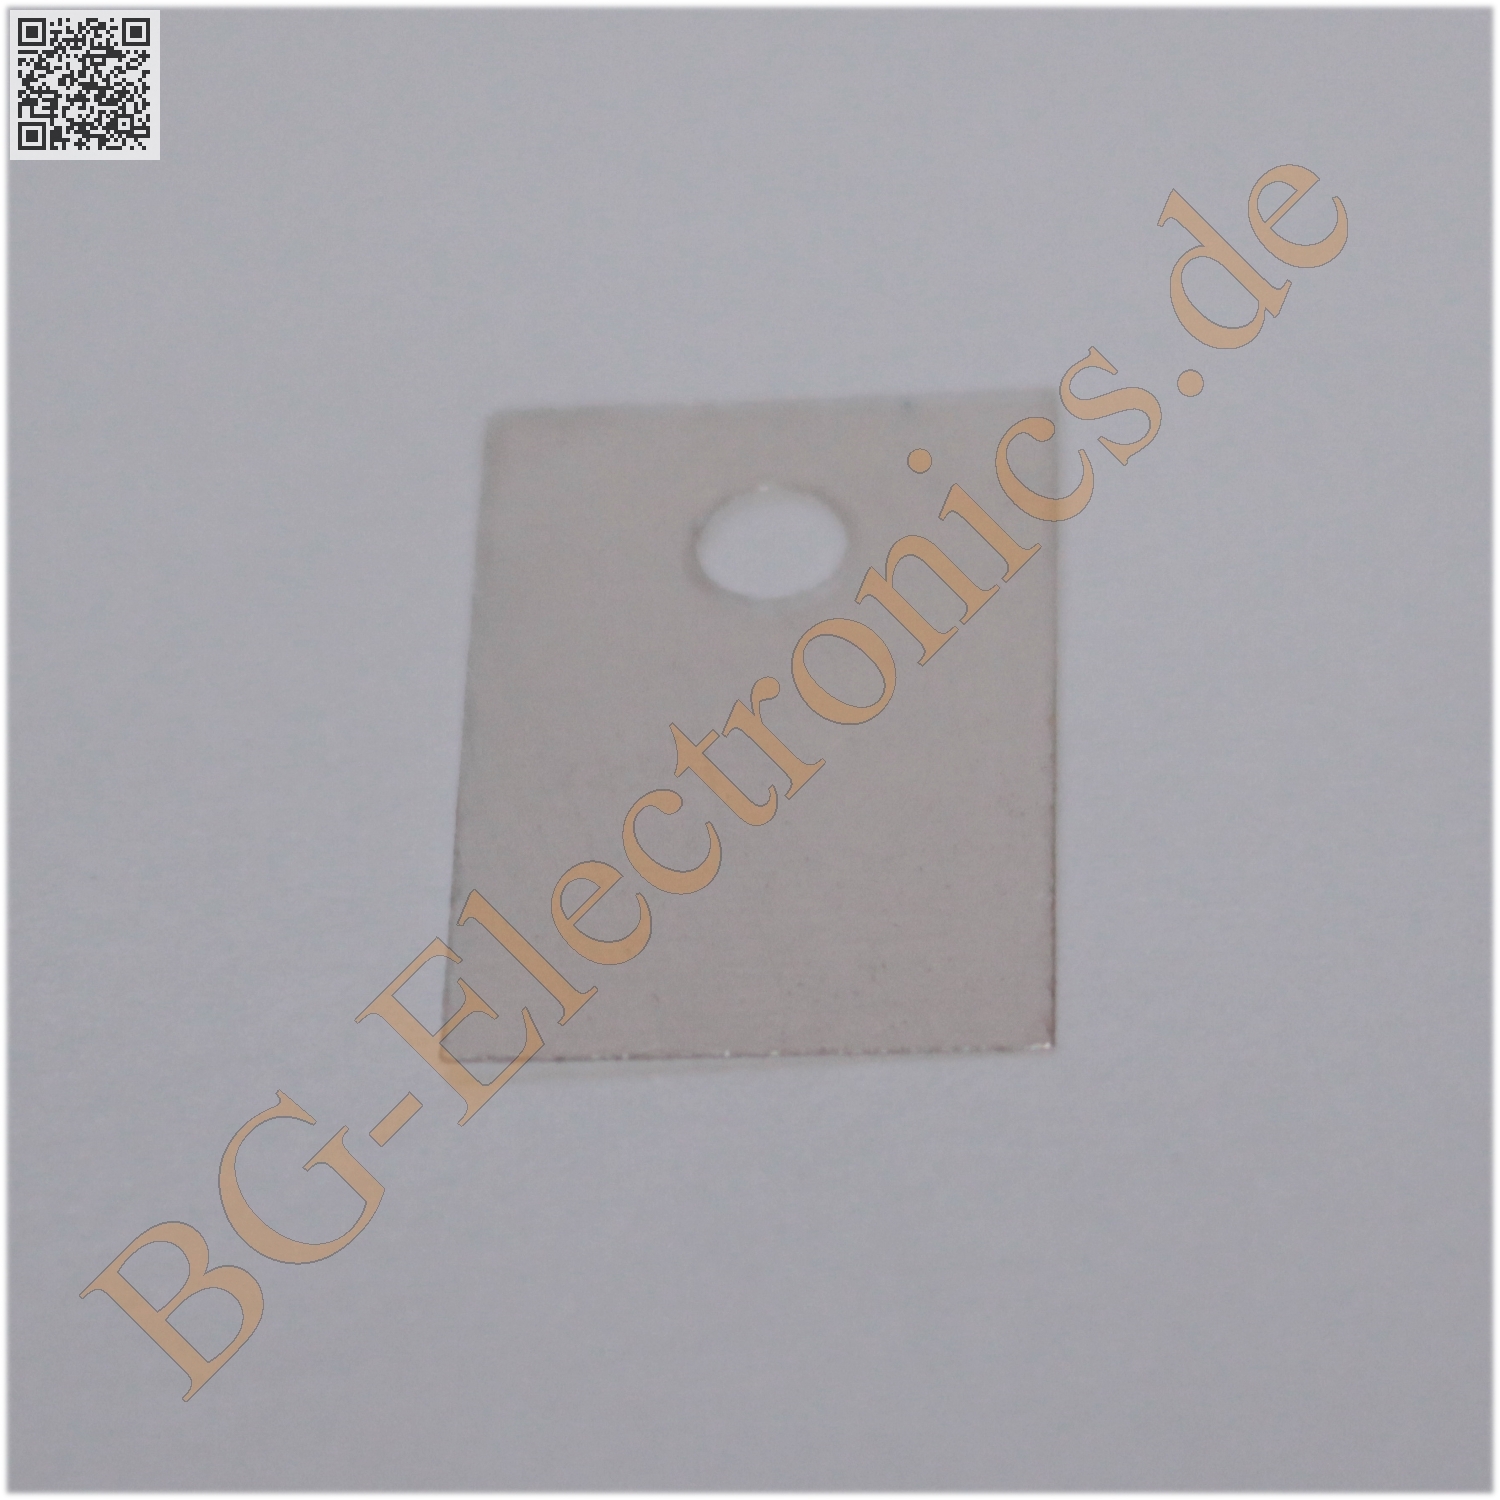 Insulatingfoil TO-220 (Glimmer)